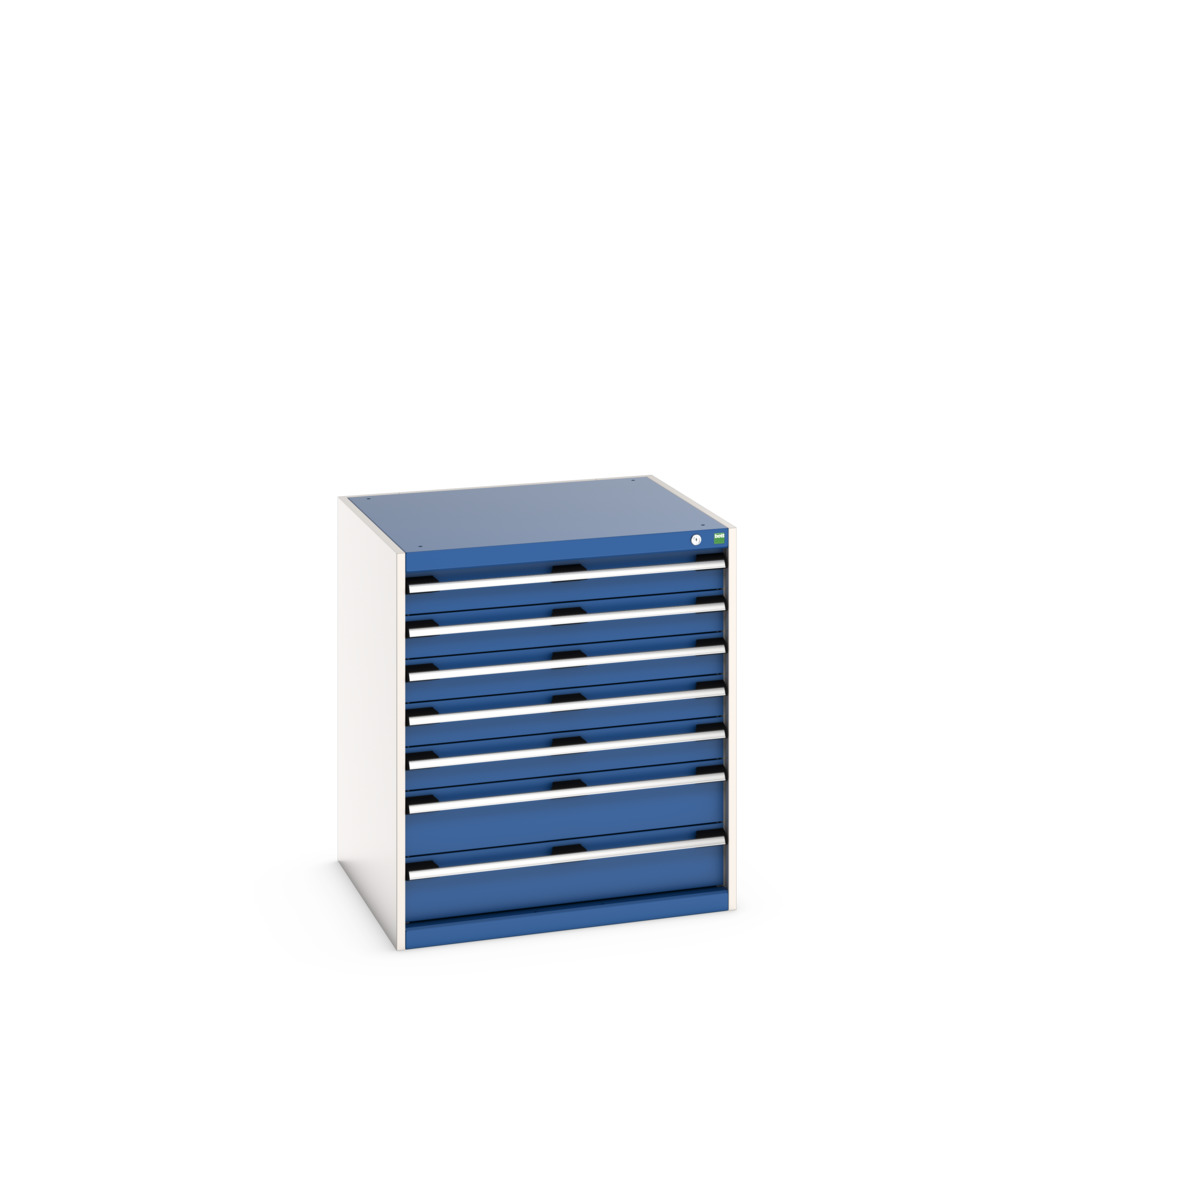 40028108.11V - cubio drawer cabinet